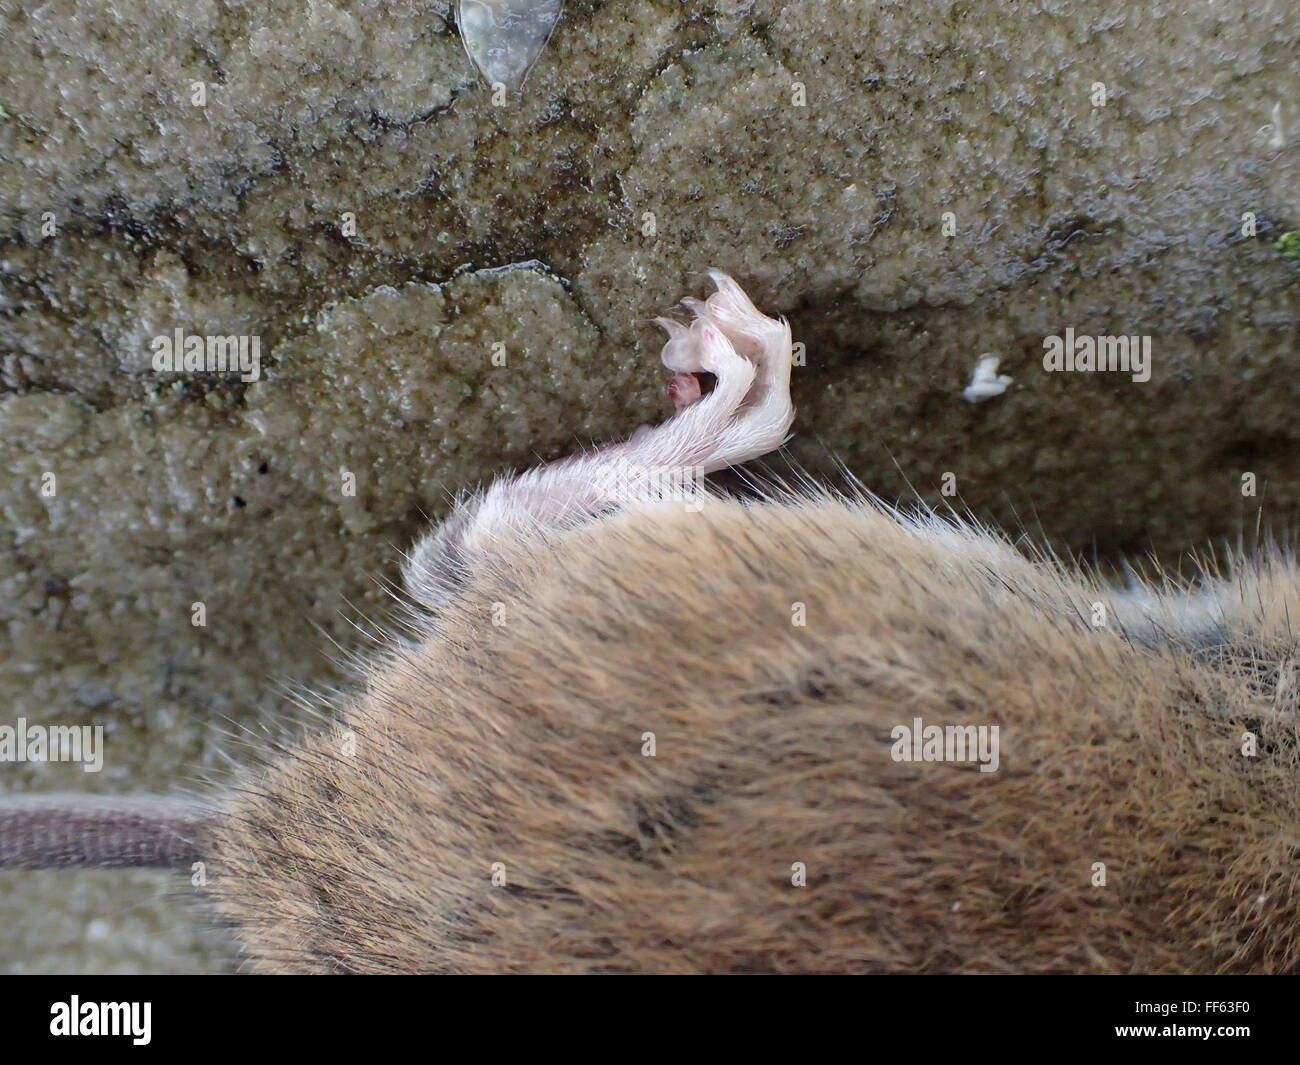 Close-up de pied arrière et l'arrière-train de maison morte souris (Mus musculus) tués par piège à souris, sur dalle Pavage calcaire Banque D'Images